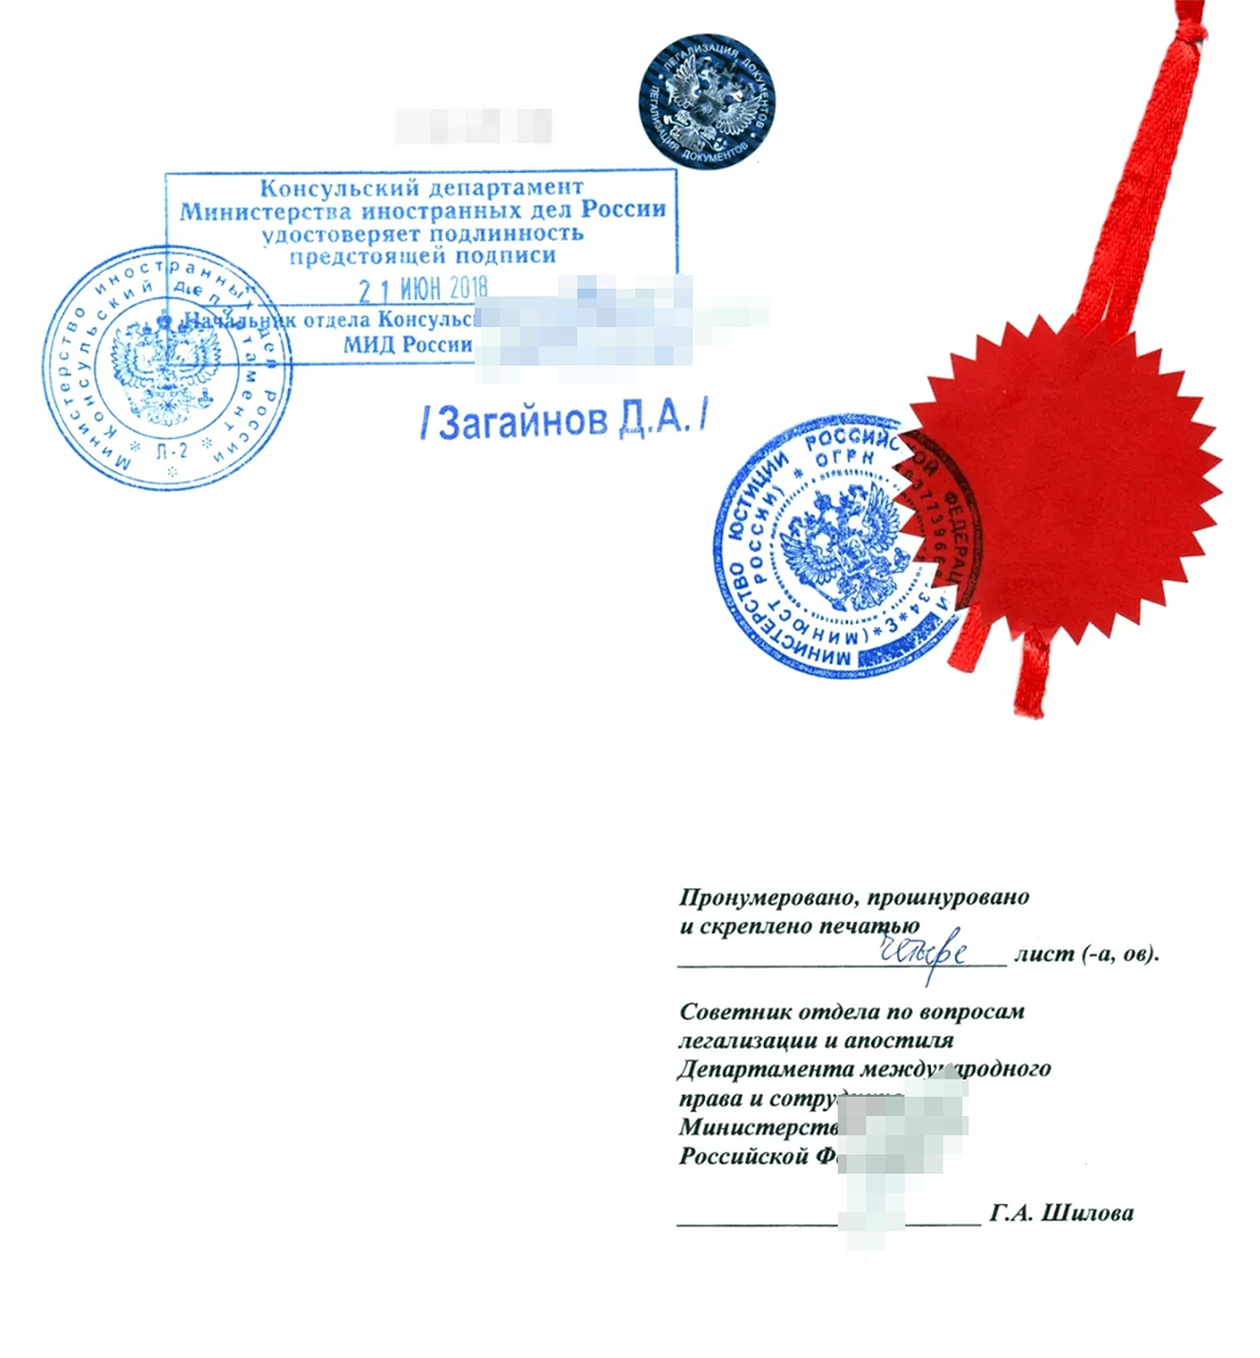 Последняя страница документа, который легализовали консульство и МИД РФ